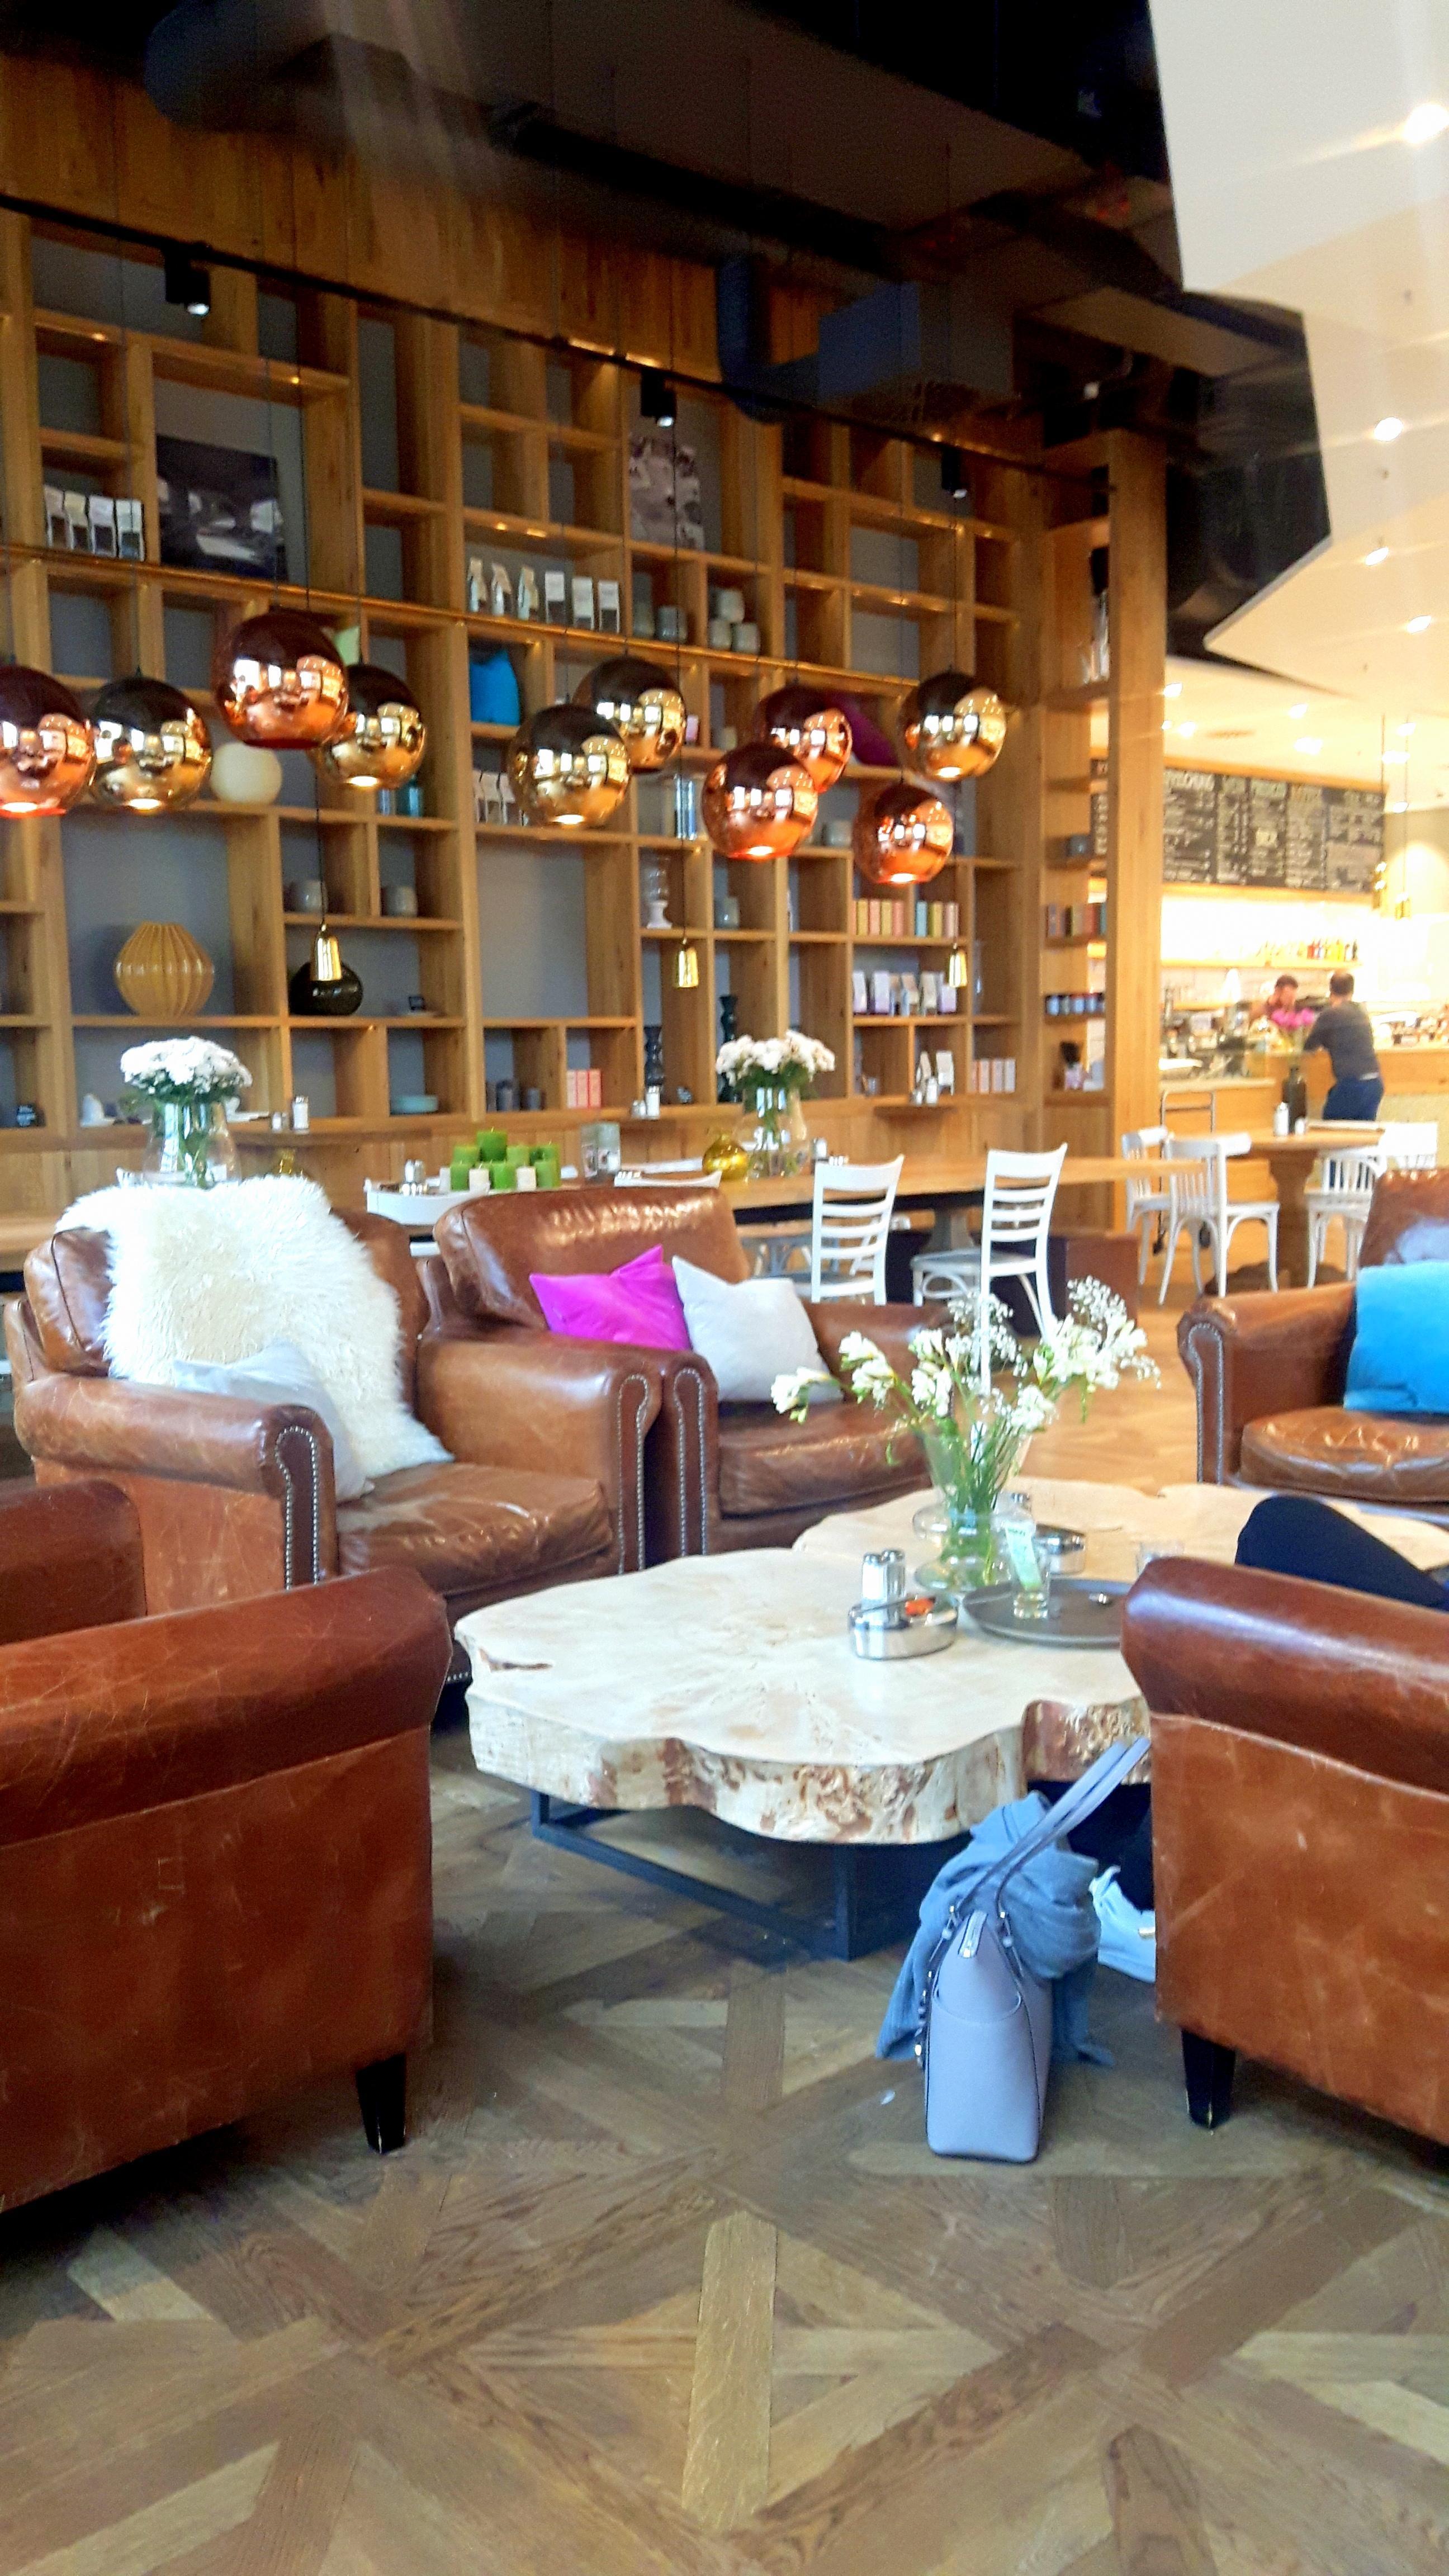 Nach einer Shoppingtour lande ich hier immer wieder #coffee #icecream #stuttgart #cozy #future #livingroom #loveit 